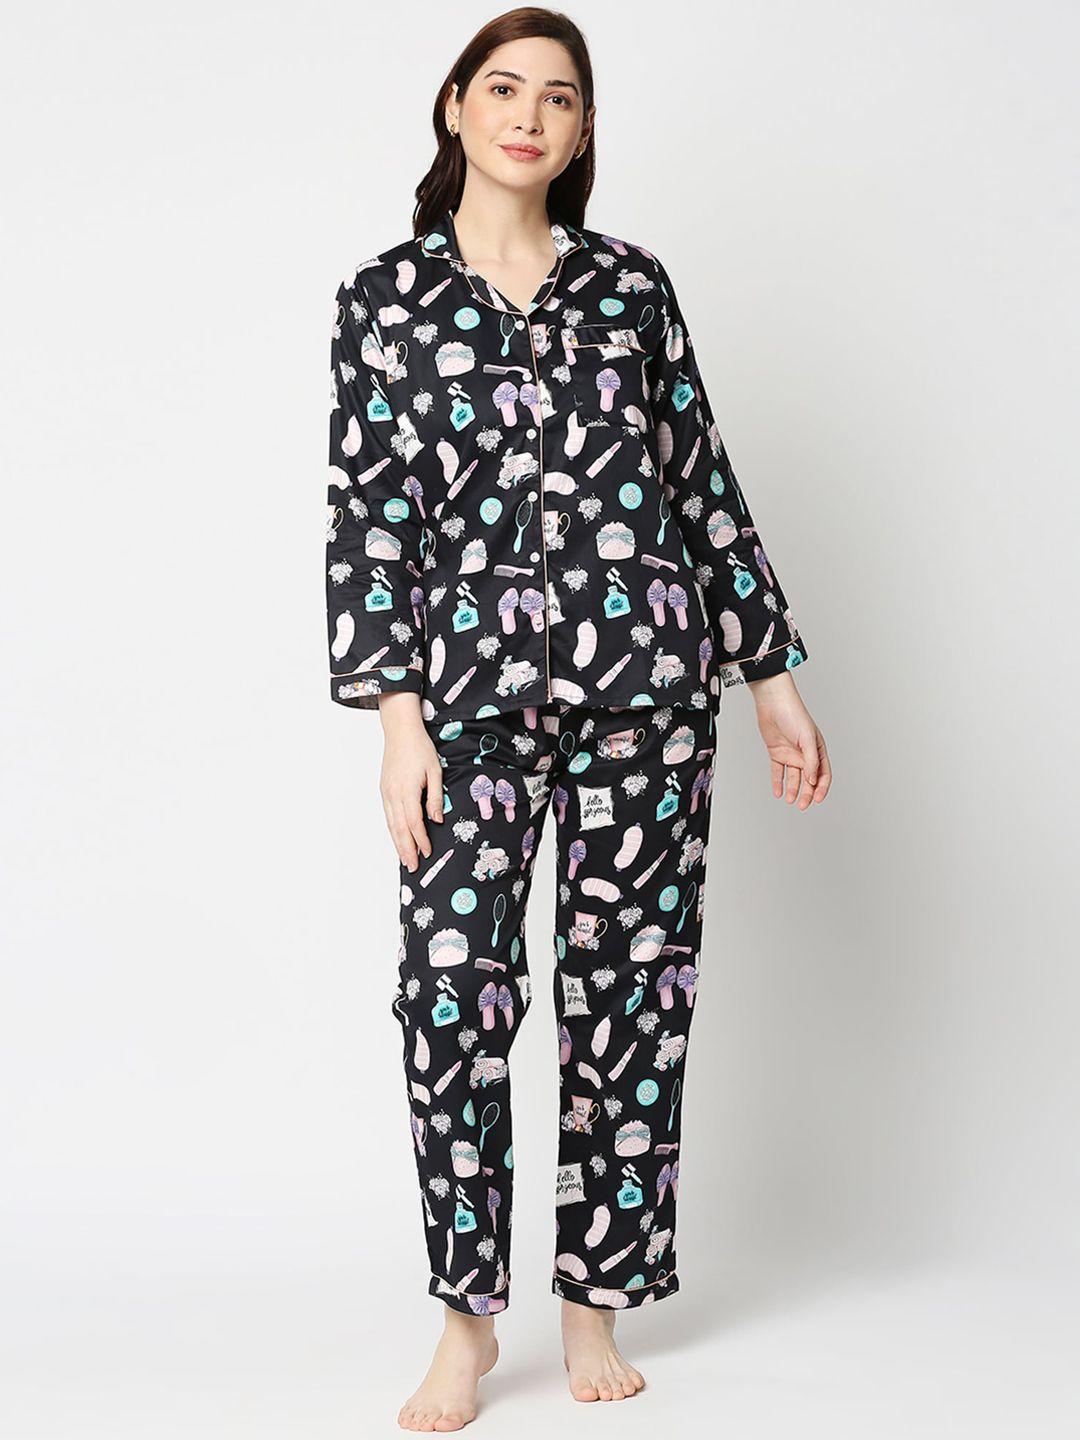 pyjama-party-women-black-&-white-printed-night-suit